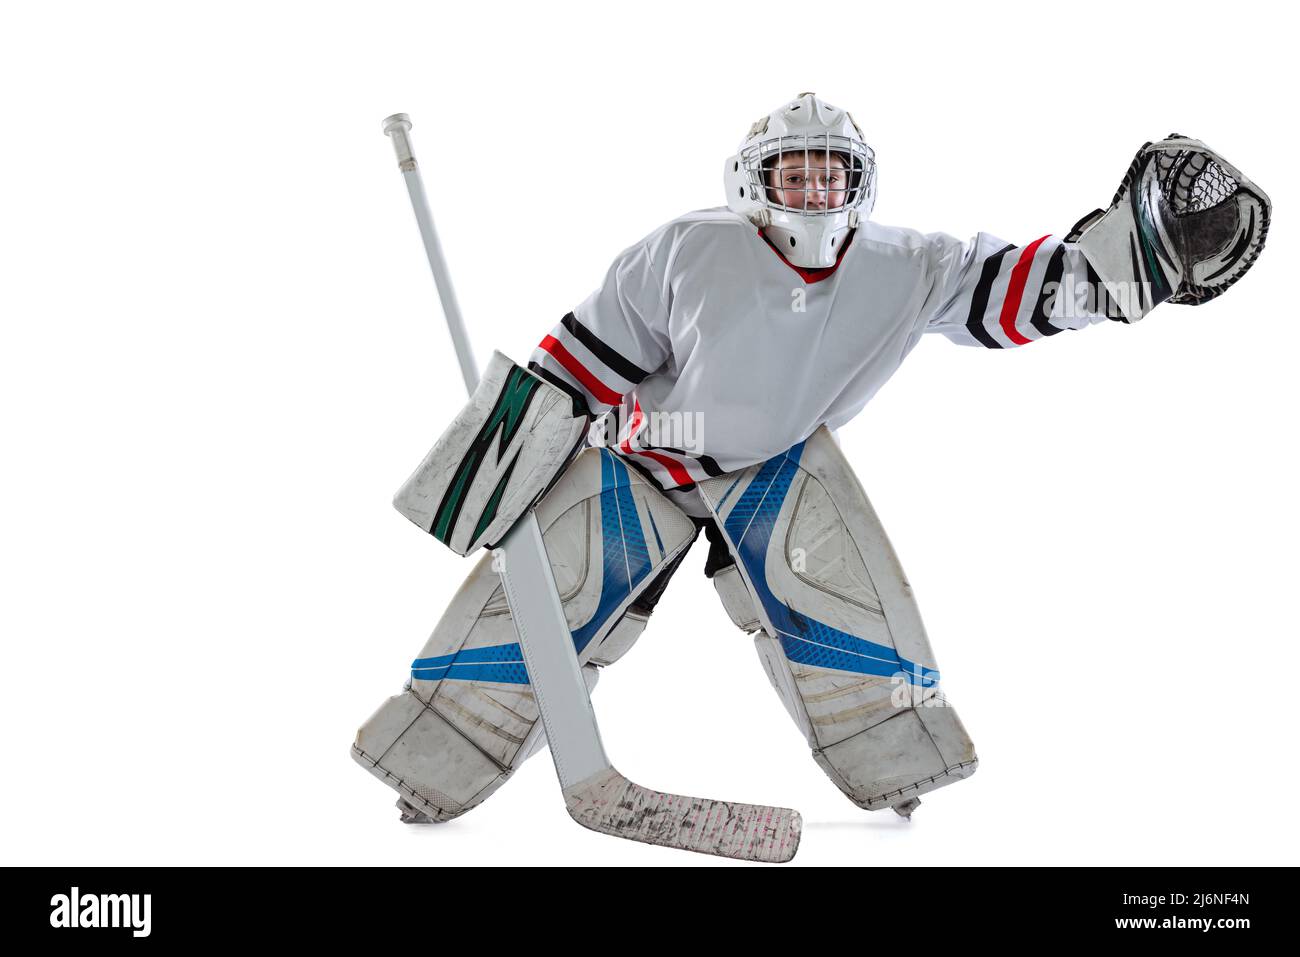 Gant de hockey sur glace Banque d'images détourées - Alamy